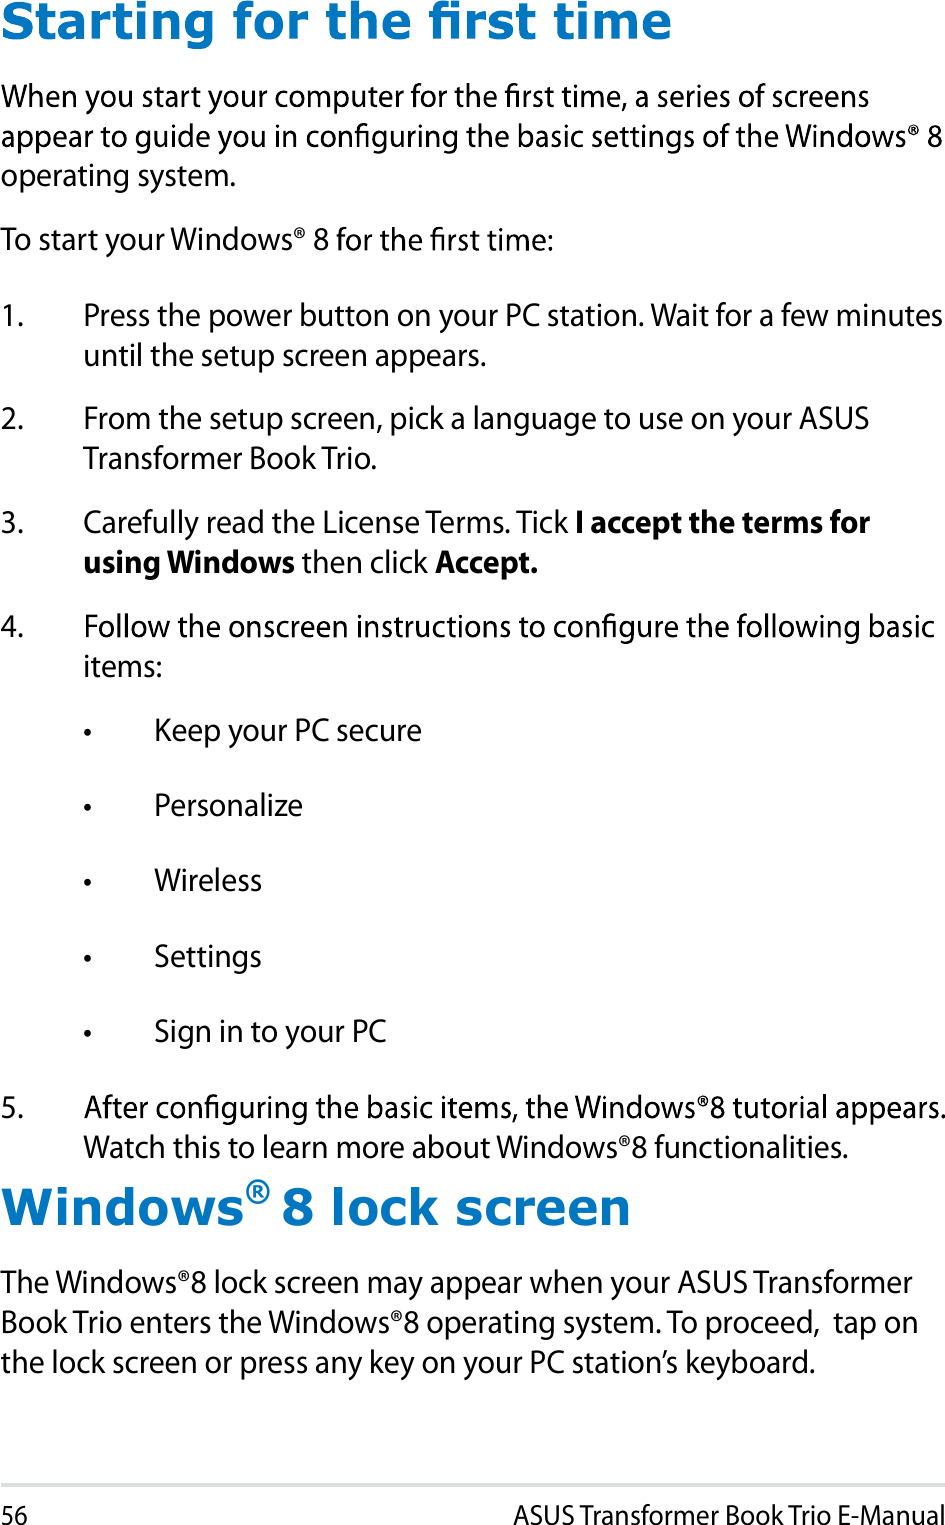                                                                                                        Windows® 8 lock screen                                 